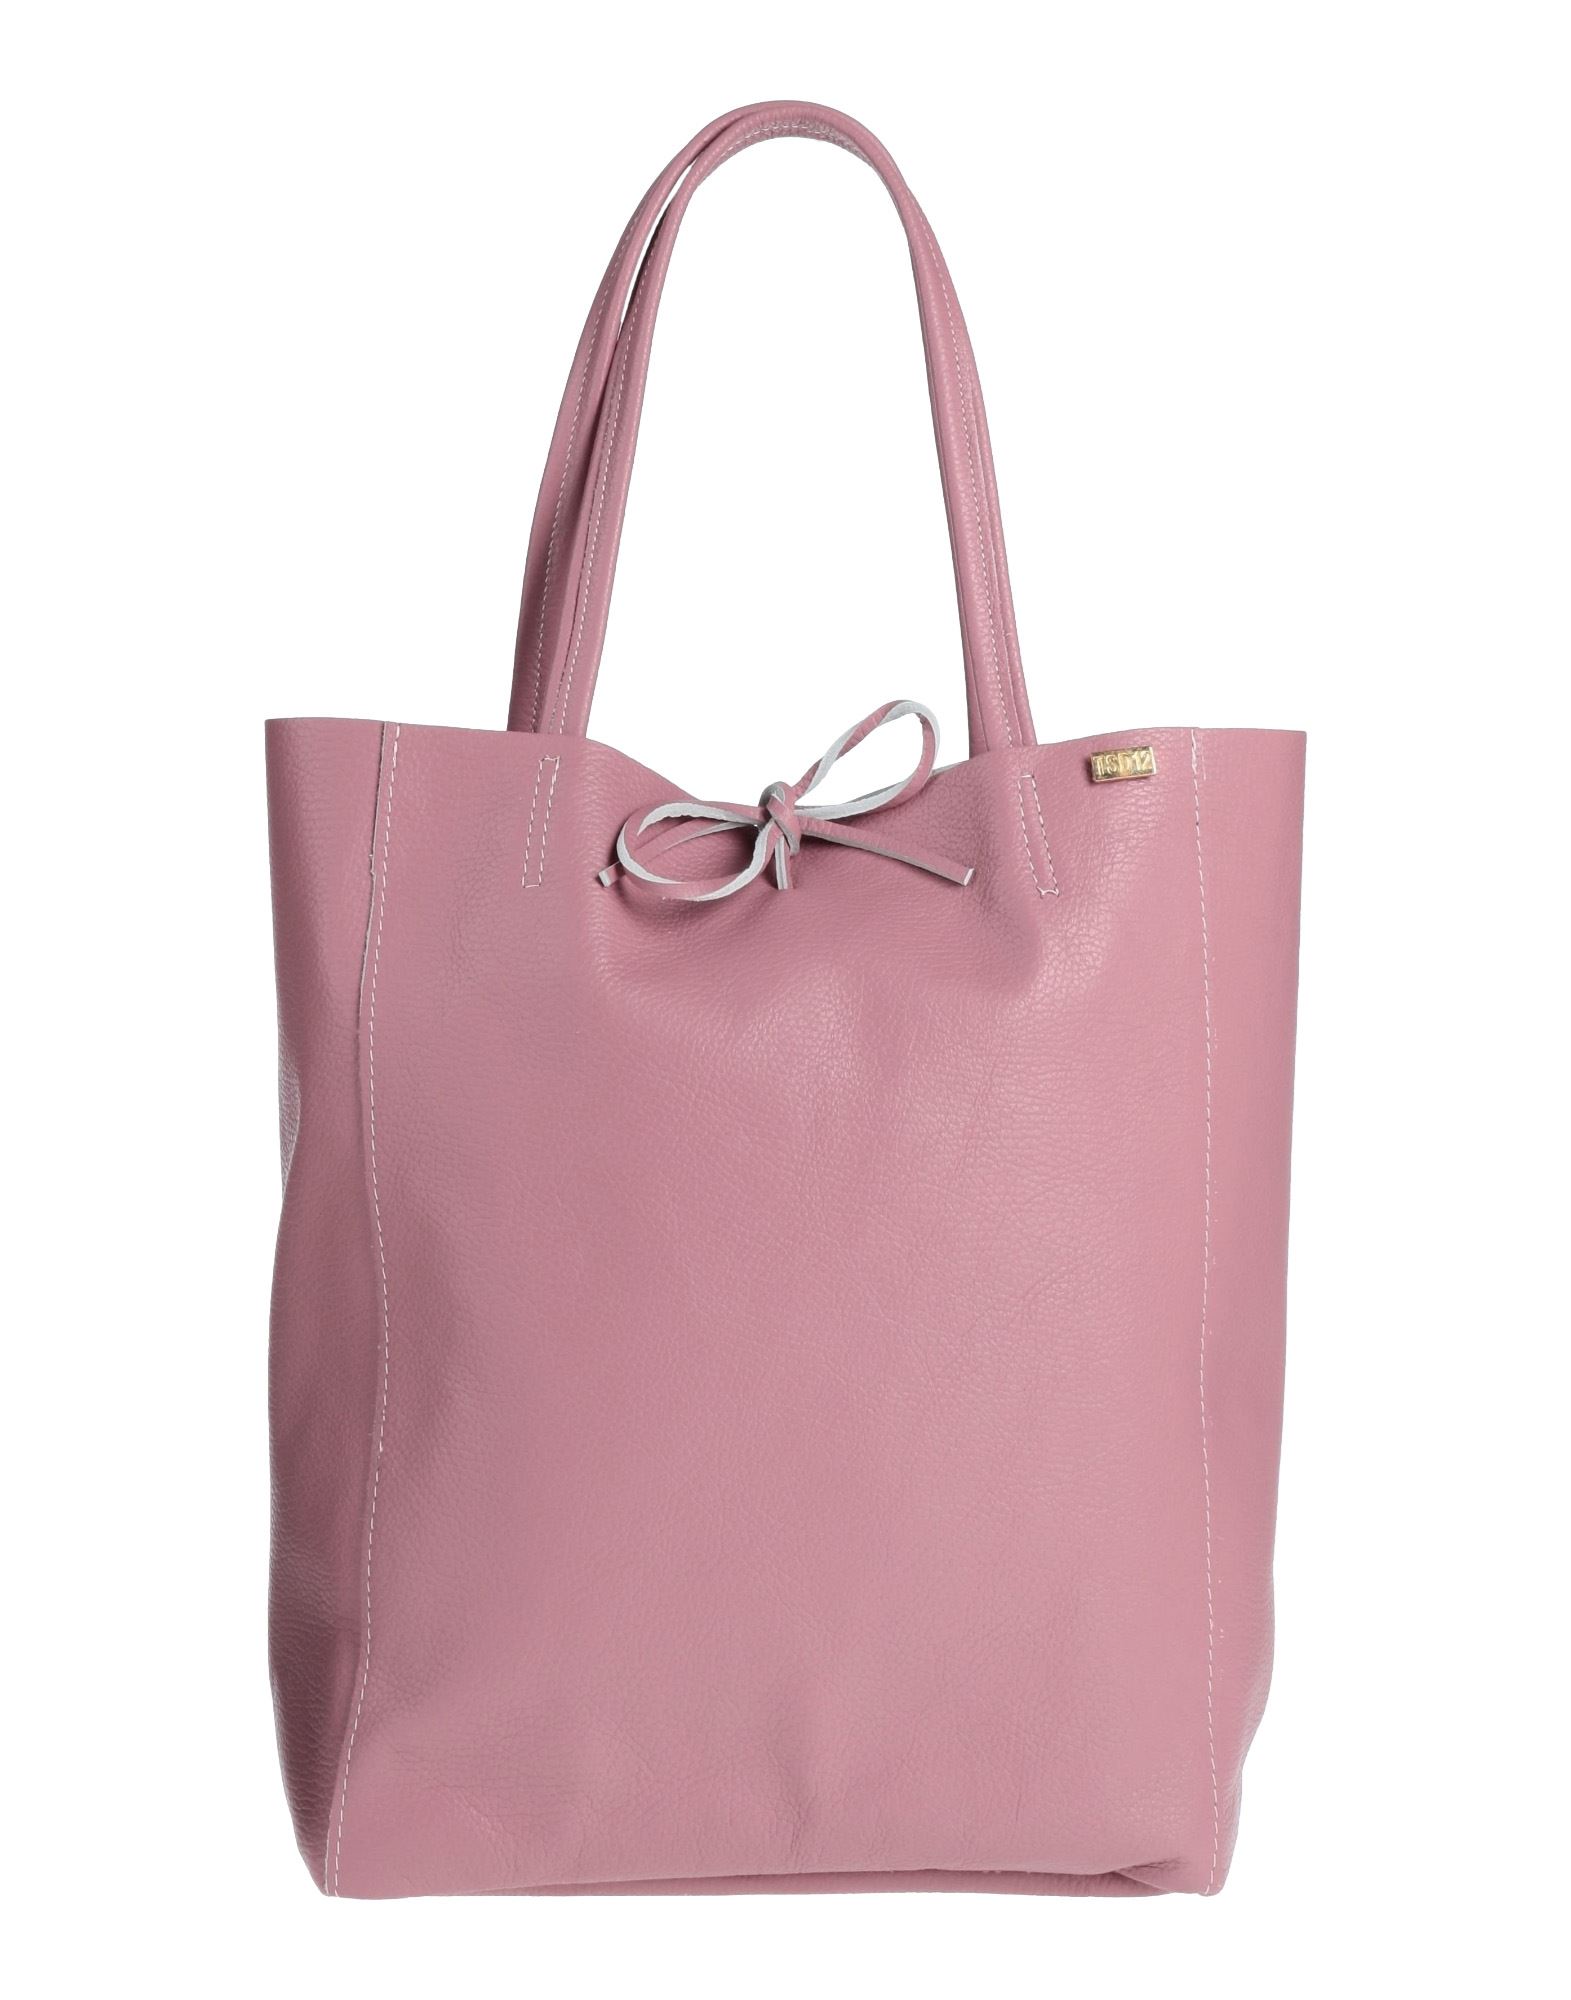 Tsd12 Handbags In Pink